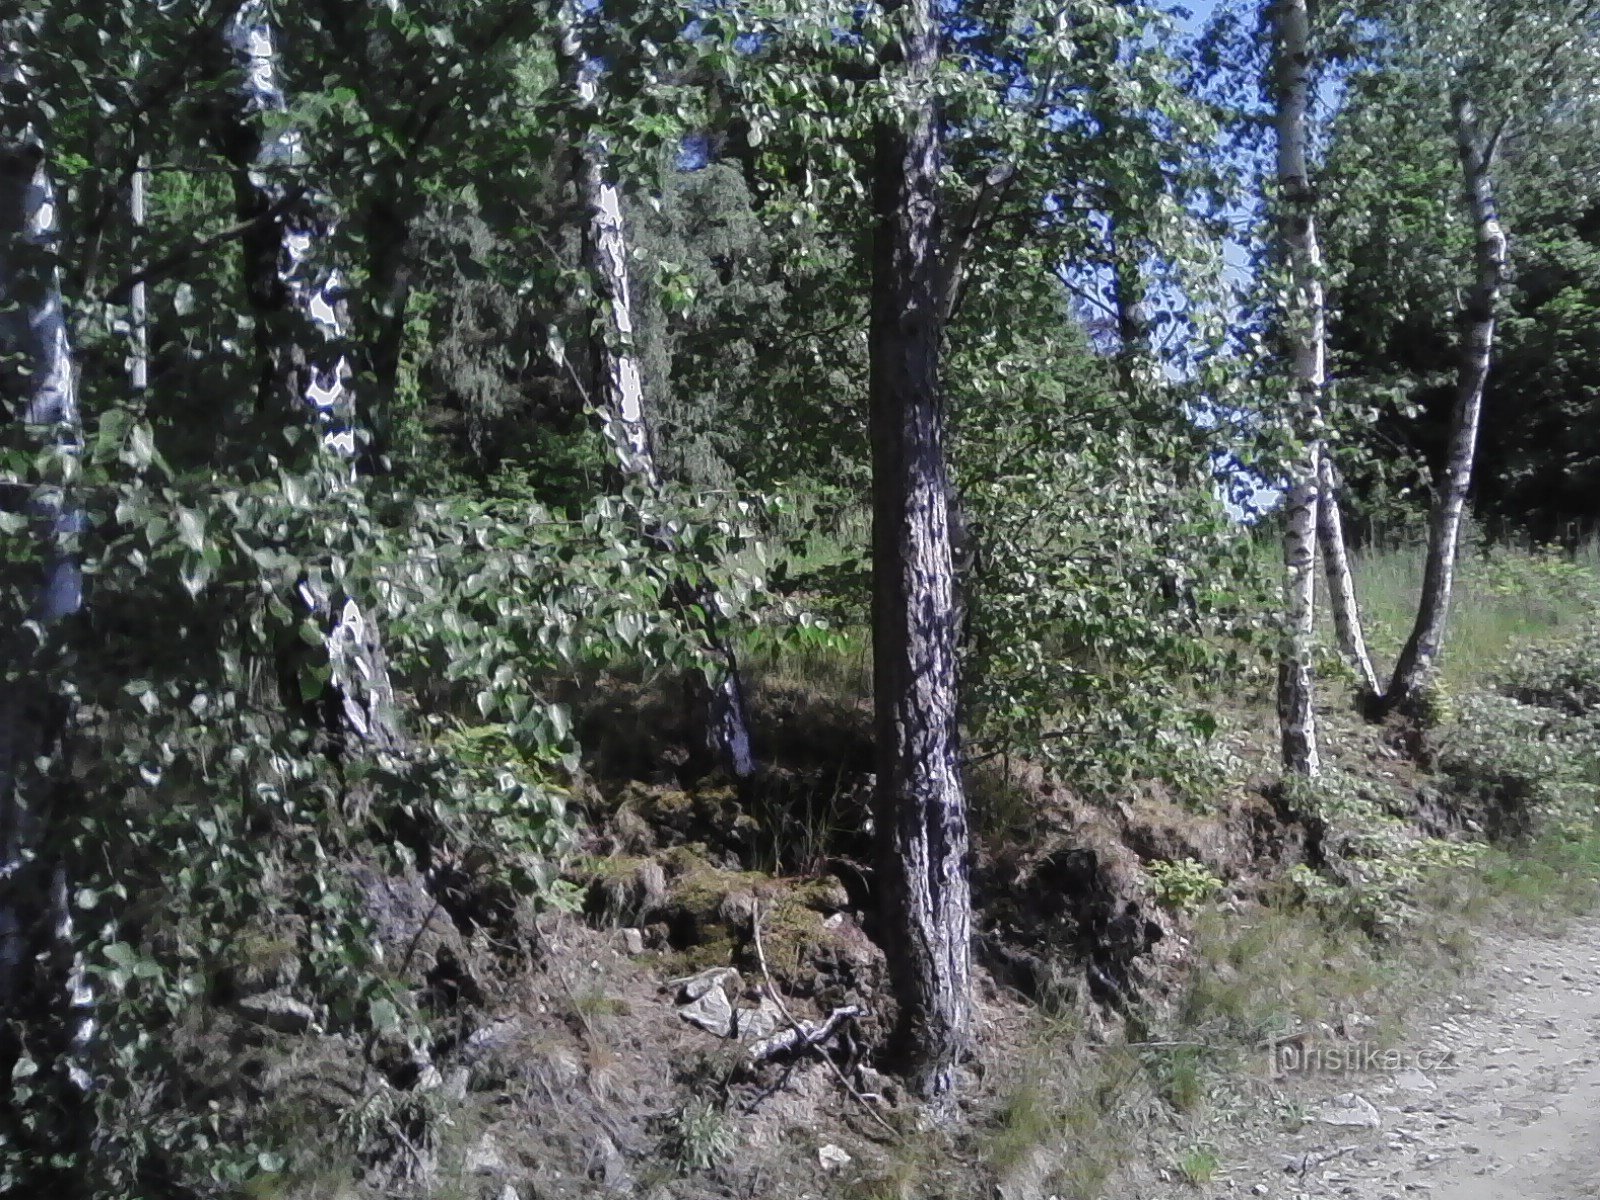 2. Ich erklimme bereits die Hügel zur Javorová skála.